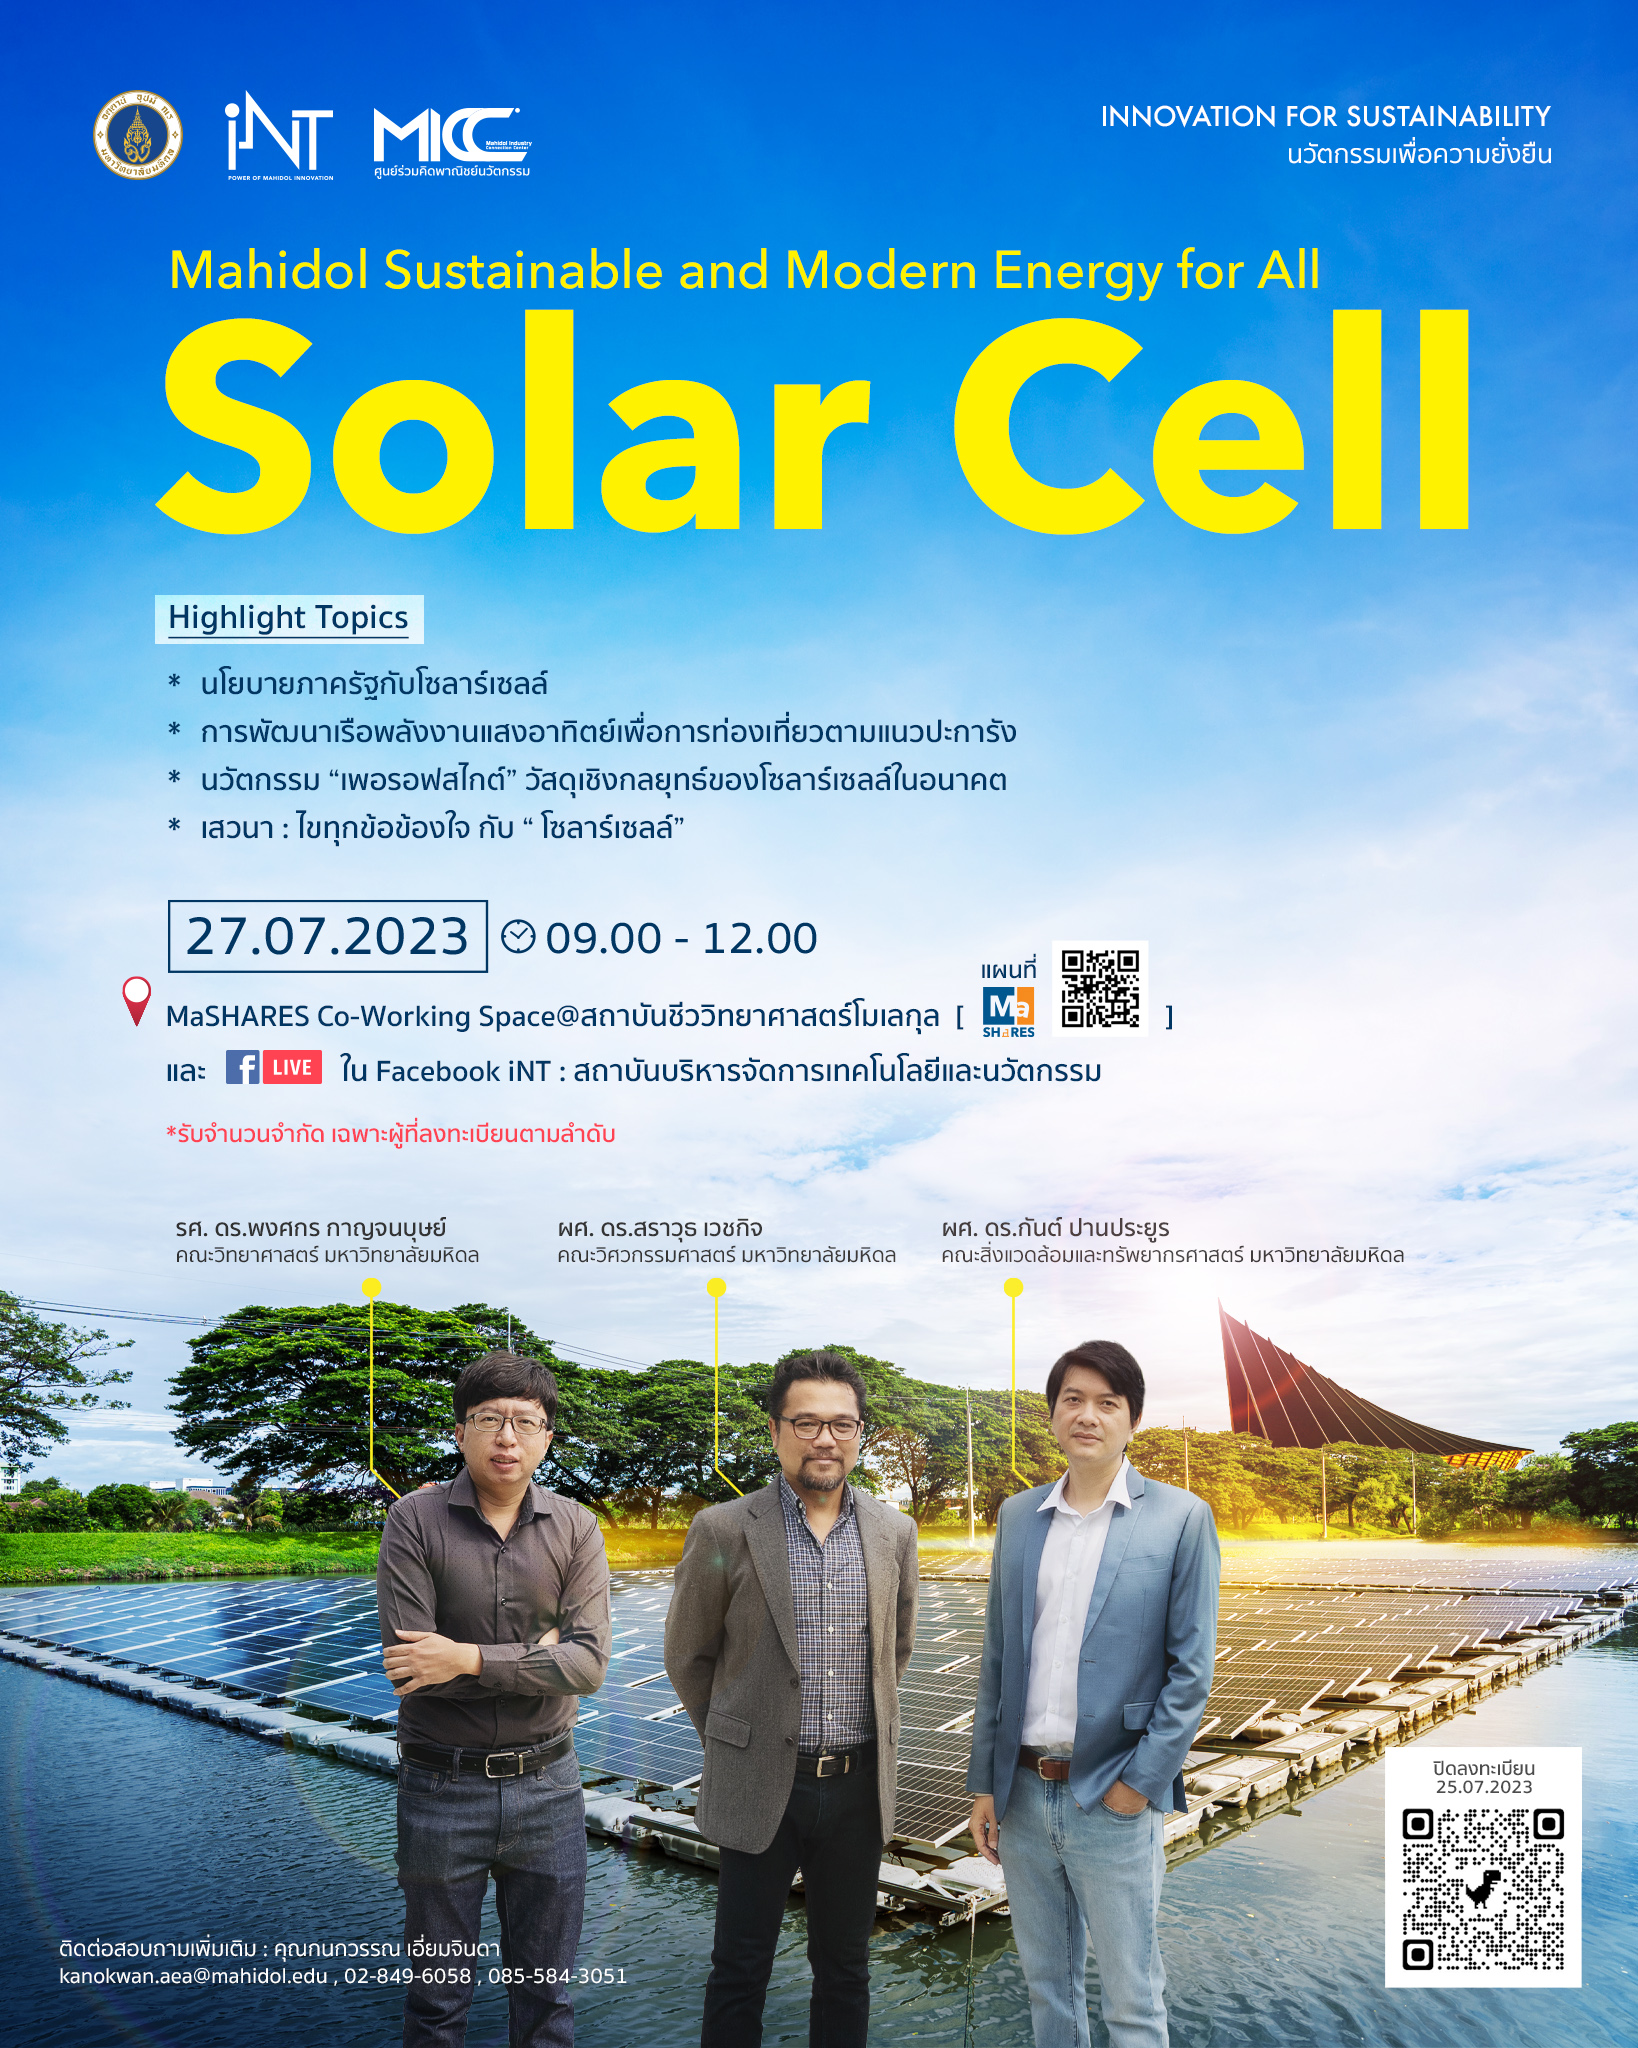 สถาบันบริหารจัดการเทคโนโลยีและนวัตกรรม ขอเชิญชวนผู้ที่สนใจเข้าร่วมสัมมนา Mahidol Sustainable and Modern Energy for All Solar Cell ณ ตึก MICC